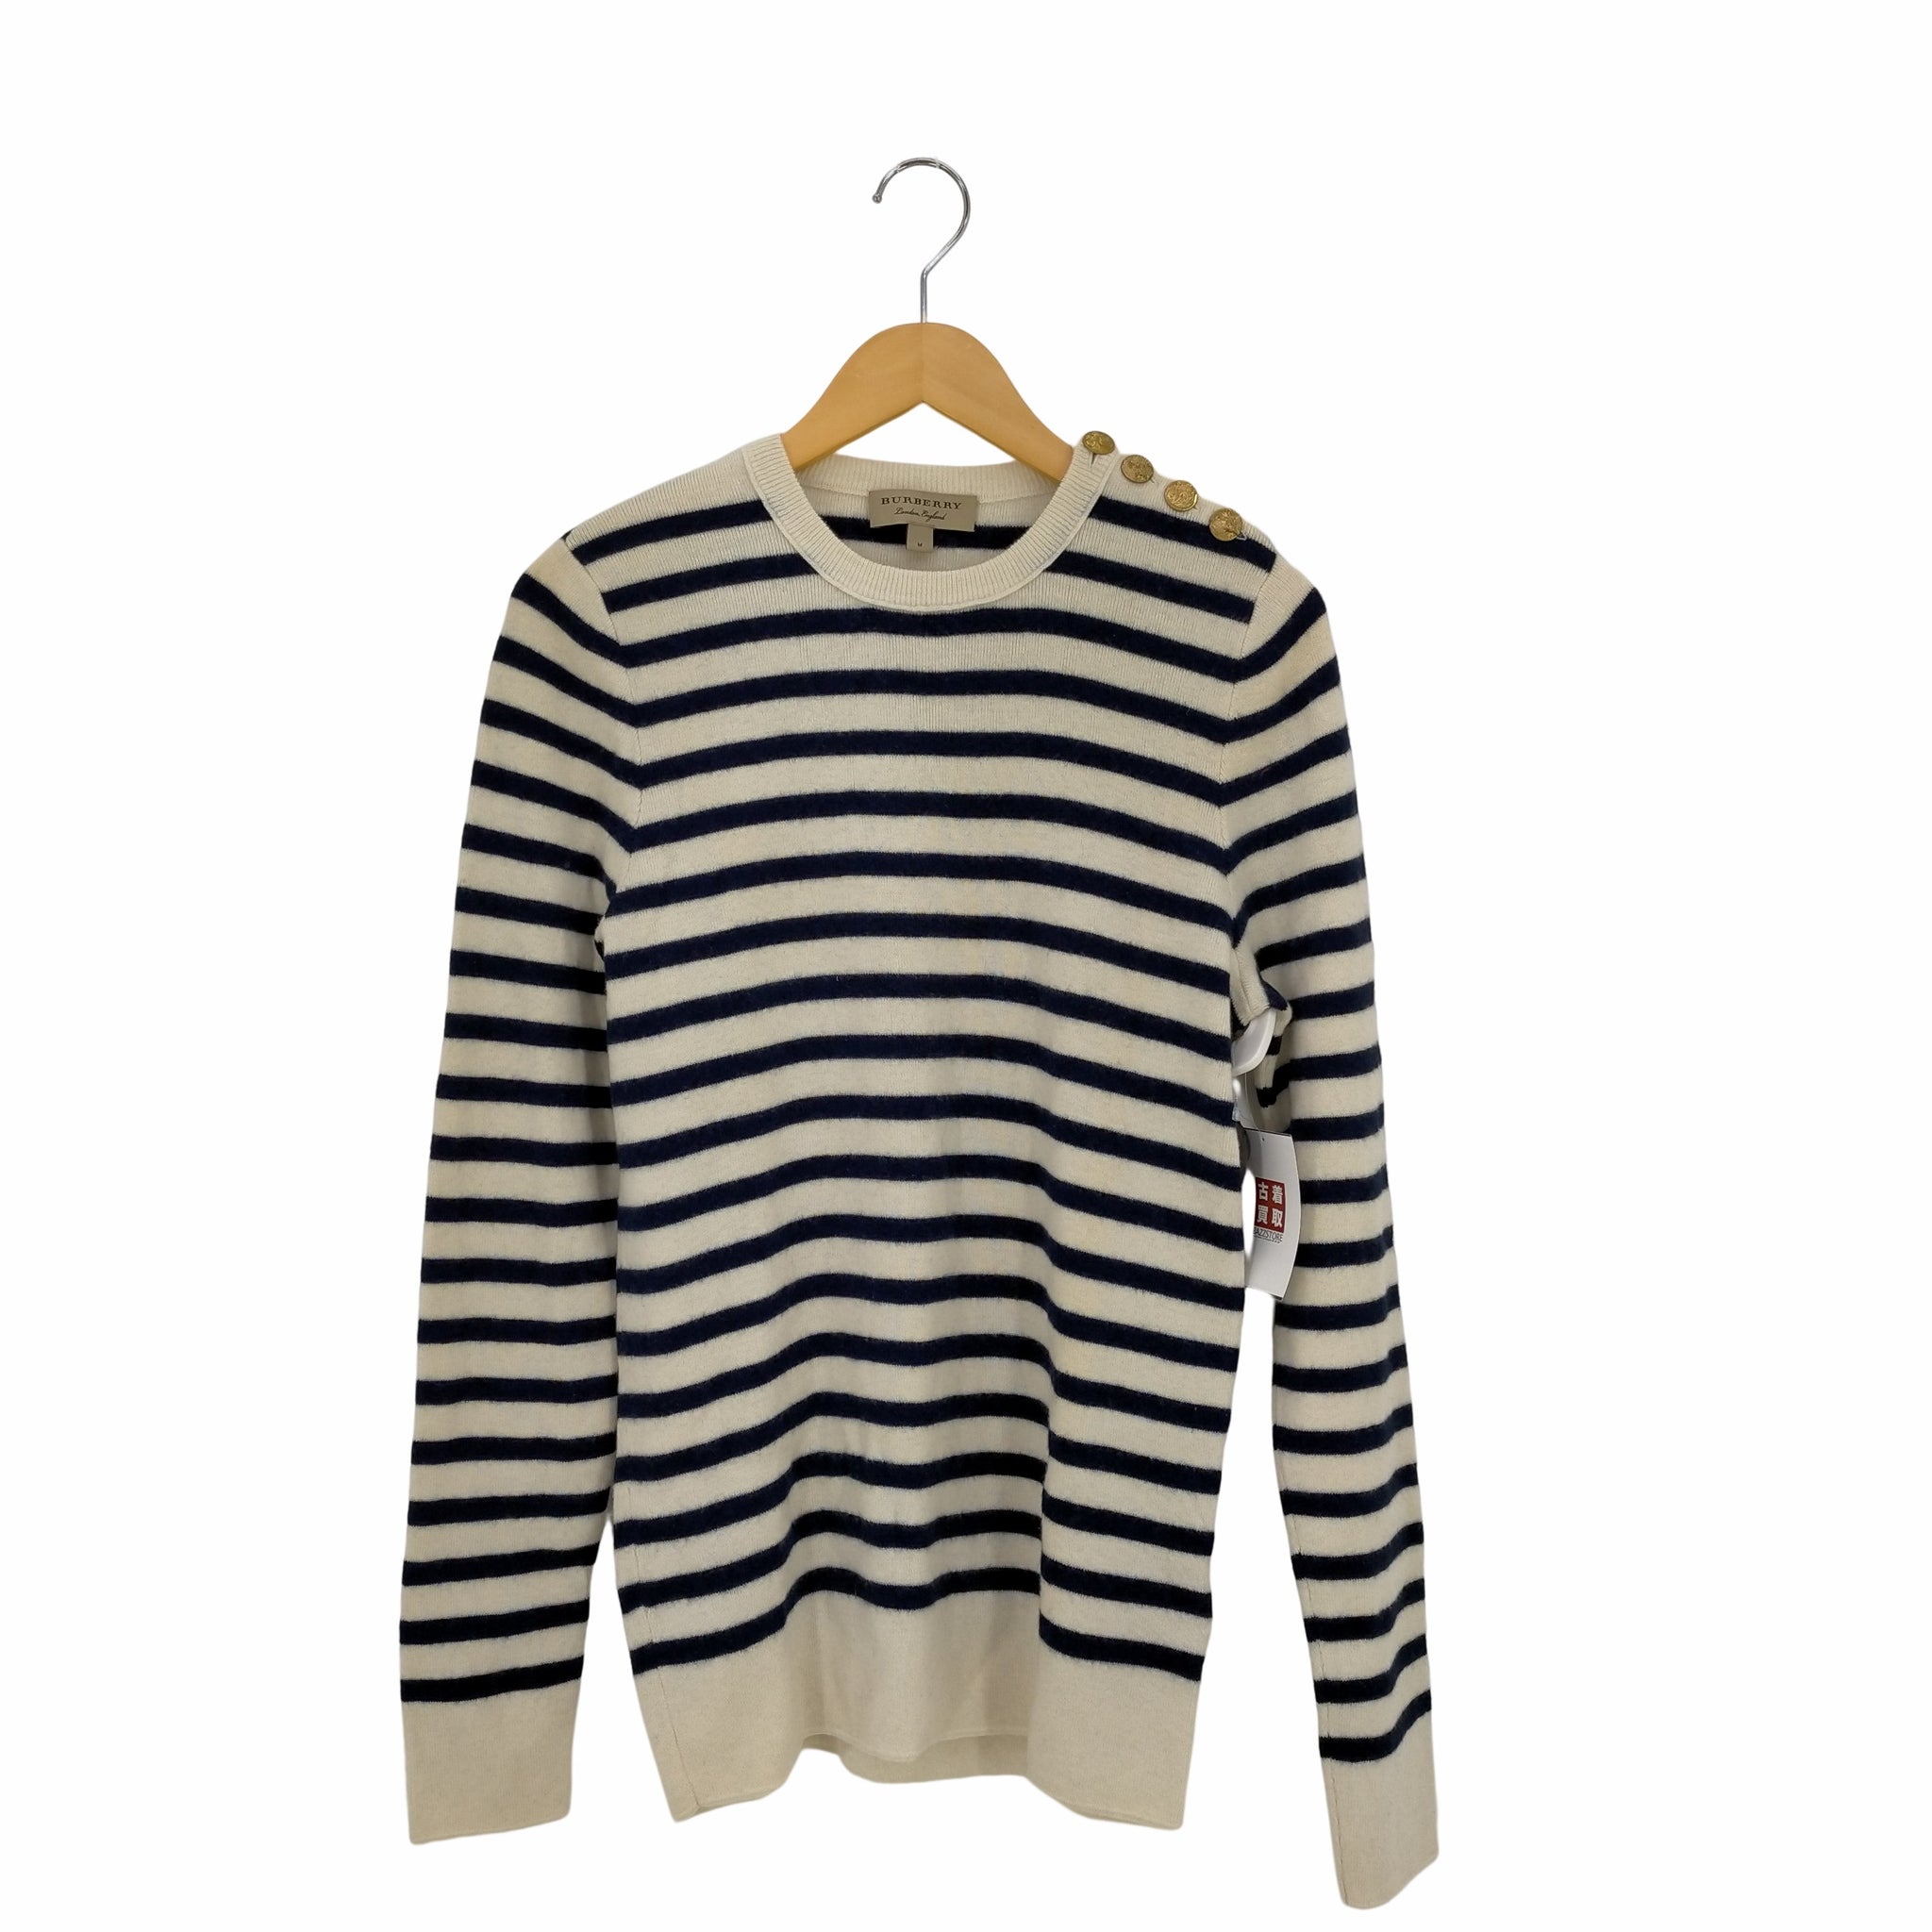 BURBERRY(バーバリー)Bird Button Breton Stripe Wool Cashmere Sweater In Navy